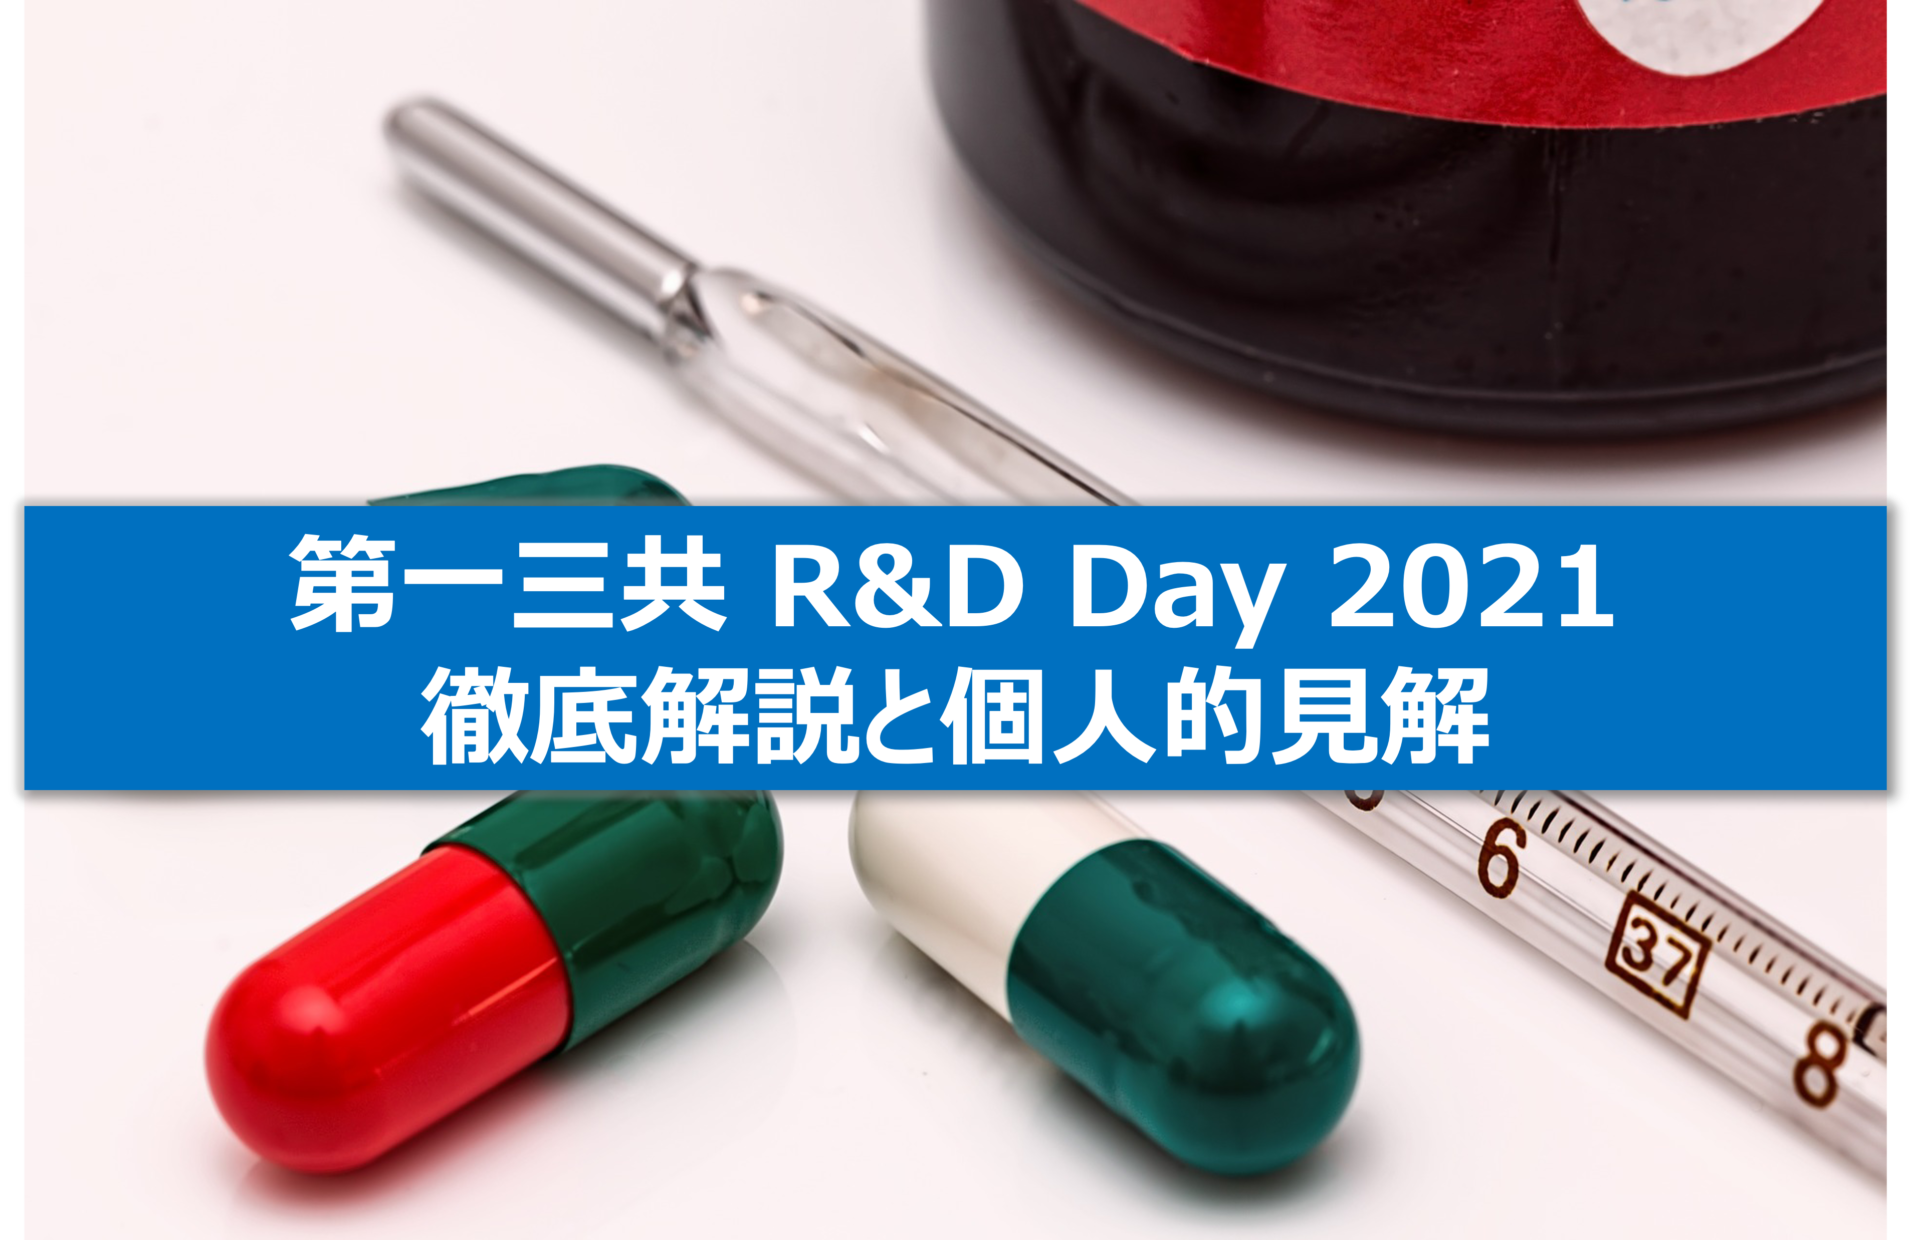 第一三共のR&D Day 2021